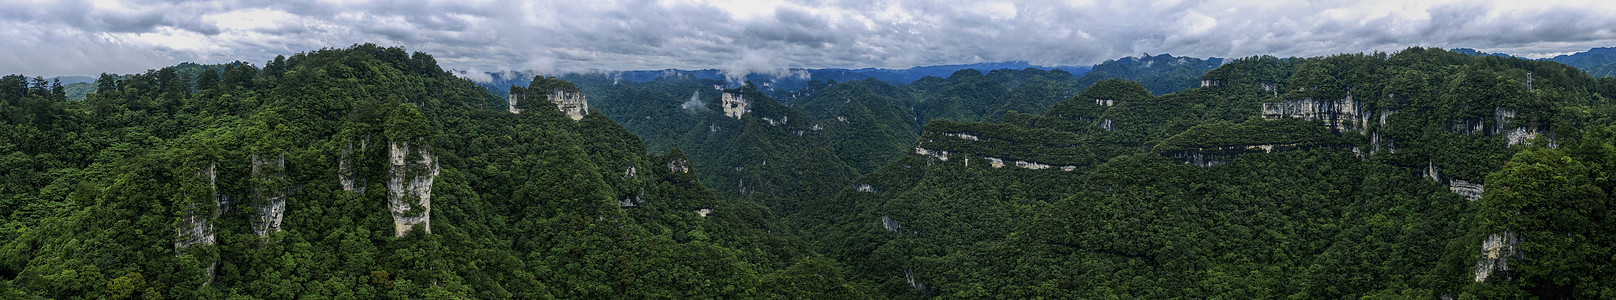 国际臭氧层保护世界自然遗产贵州施秉云台山航拍摄影图片背景